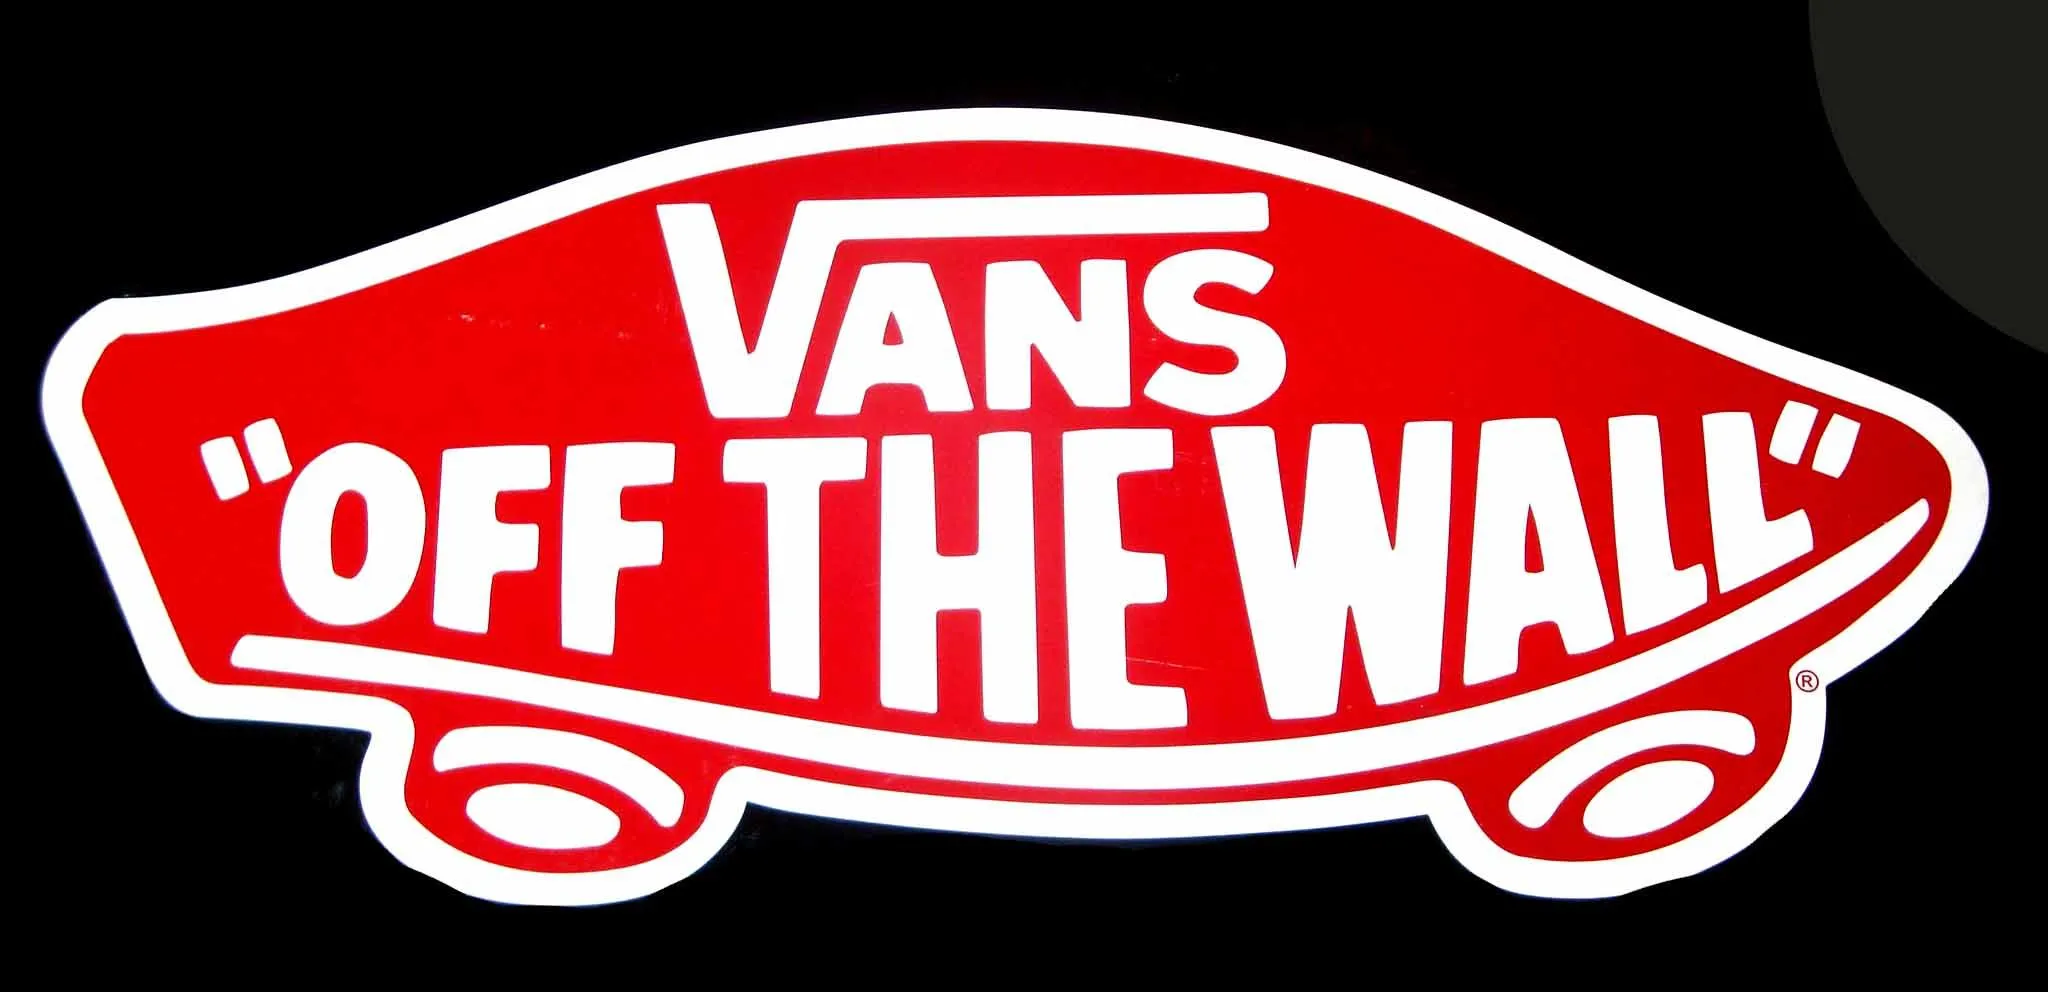 Images For > Skateboarding Logos Vans